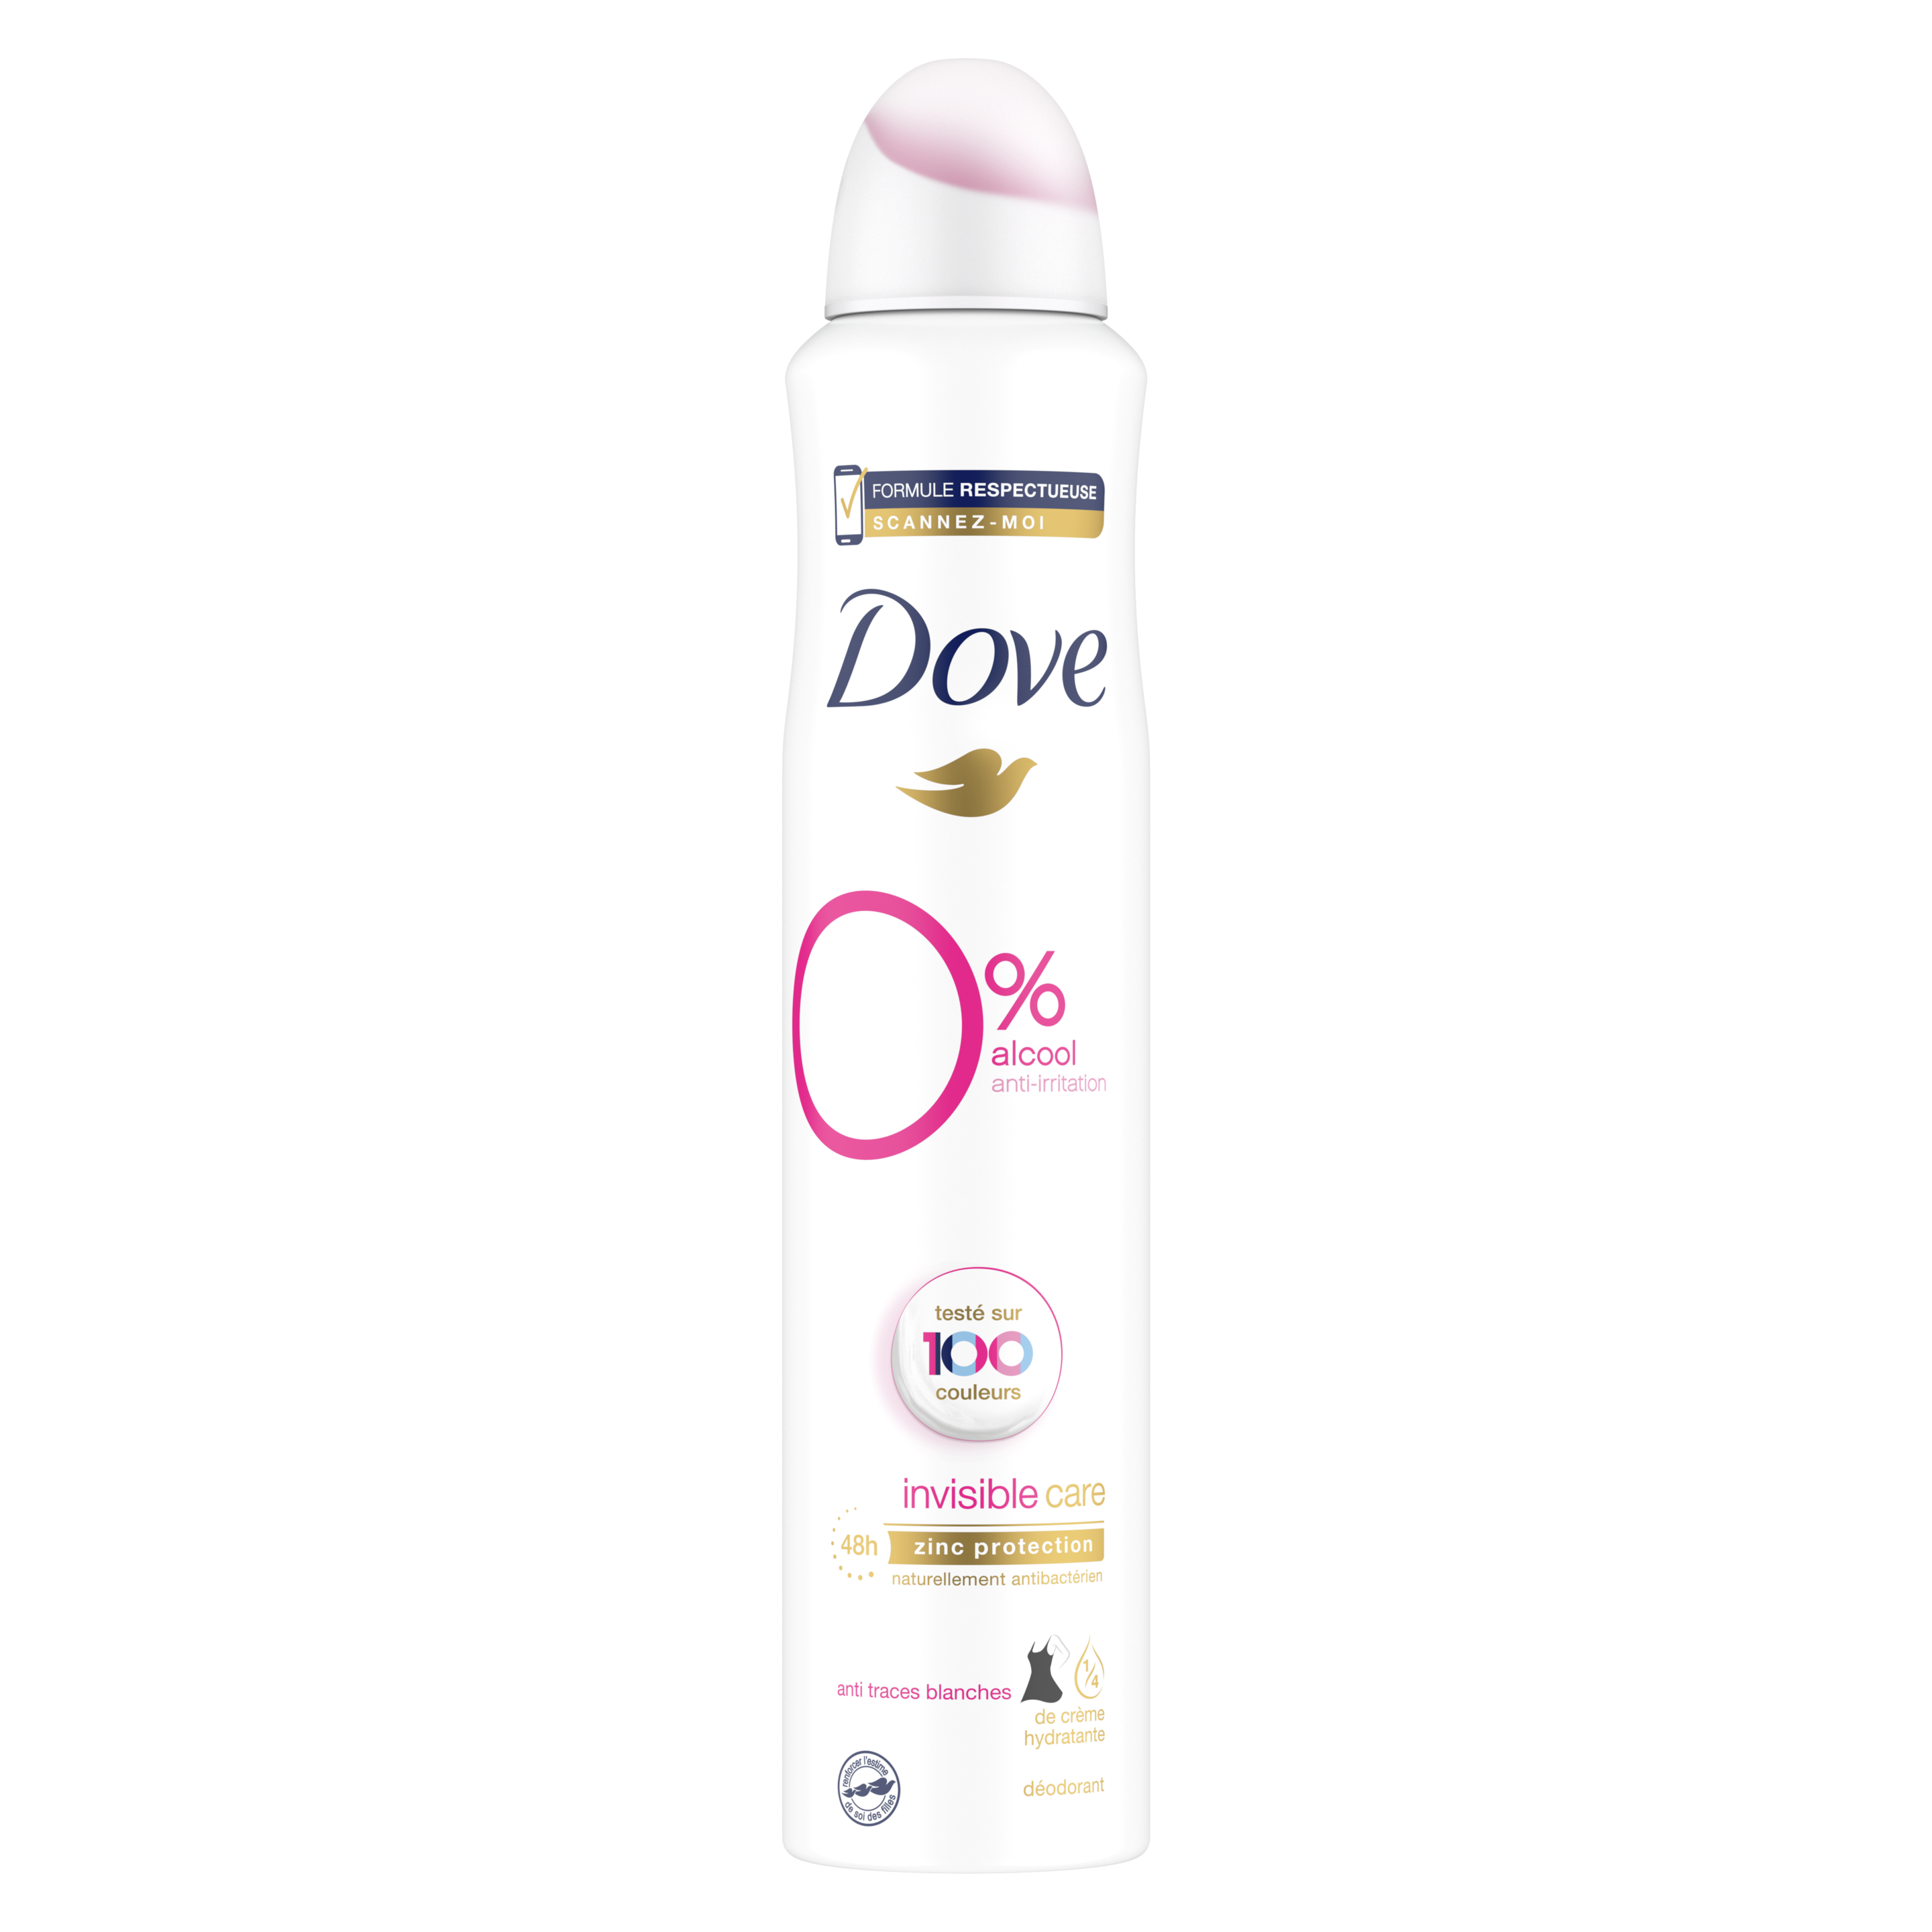 Dove Déodorant Invisible Care 0% alcool Spray 200ml